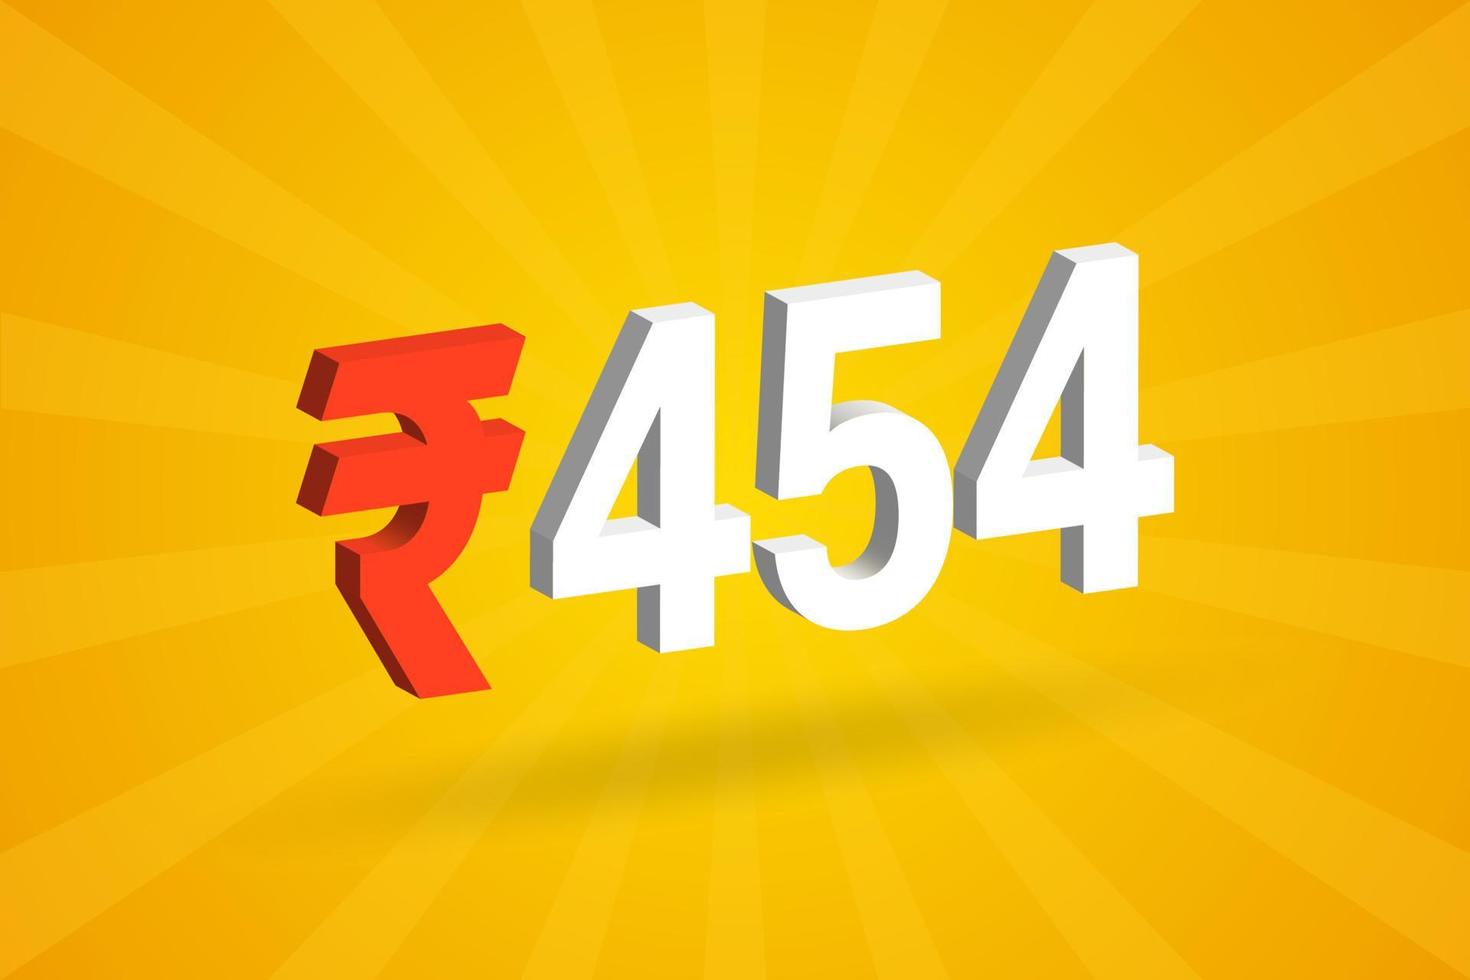 454 rupia símbolo 3d imagem de vetor de texto em negrito. 3d 454 rupia indiana ilustração vetorial de sinal de moeda